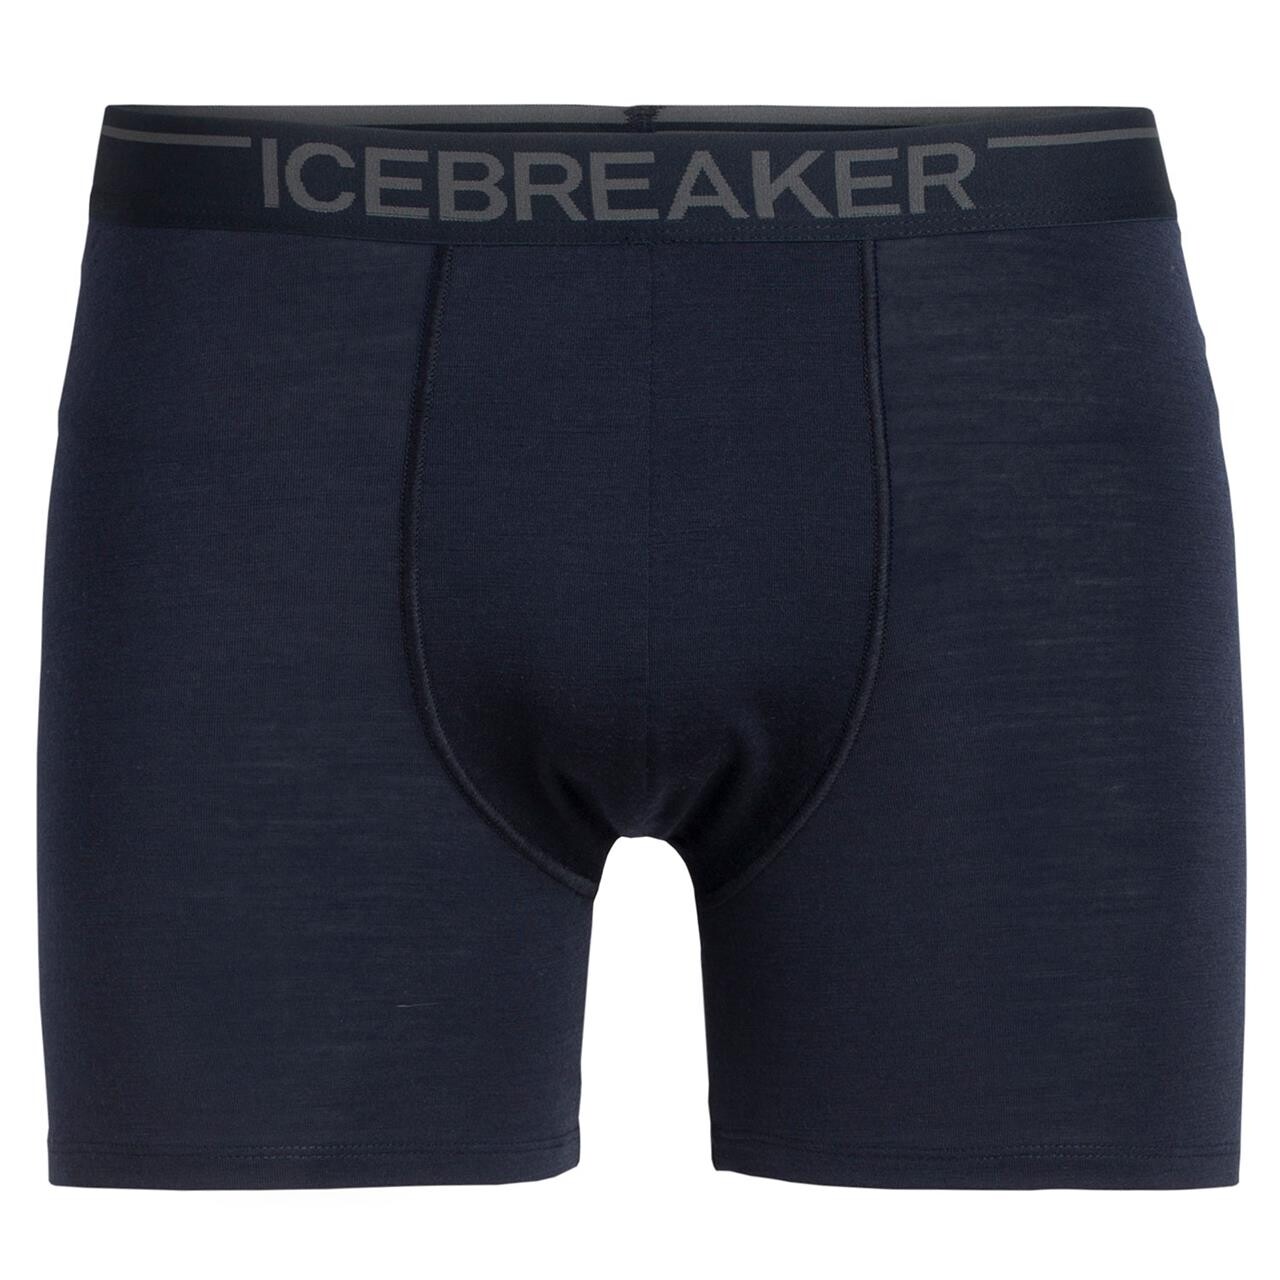 Se Icebreaker Mens Anatomica Boxers (Blå (MIDNIGHT NAVY) Medium) hos Friluftsland.dk